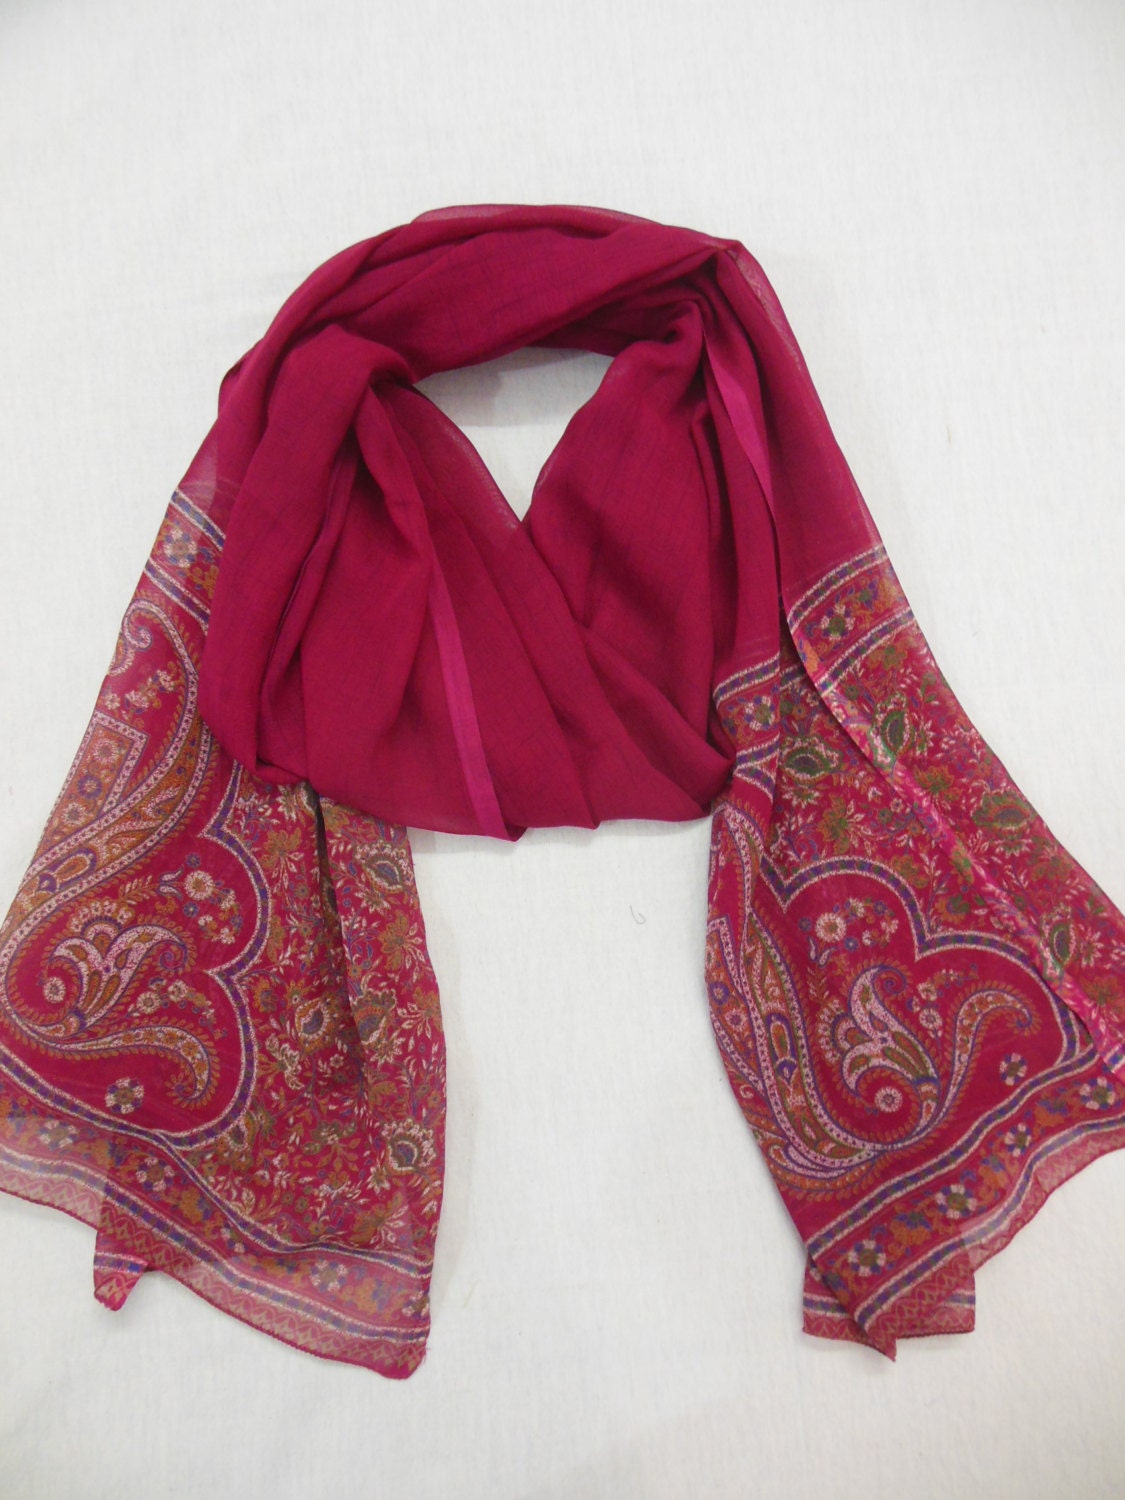 Vintage dupatta scarf long scarf regular scarf stole shawl wrap fabric ...